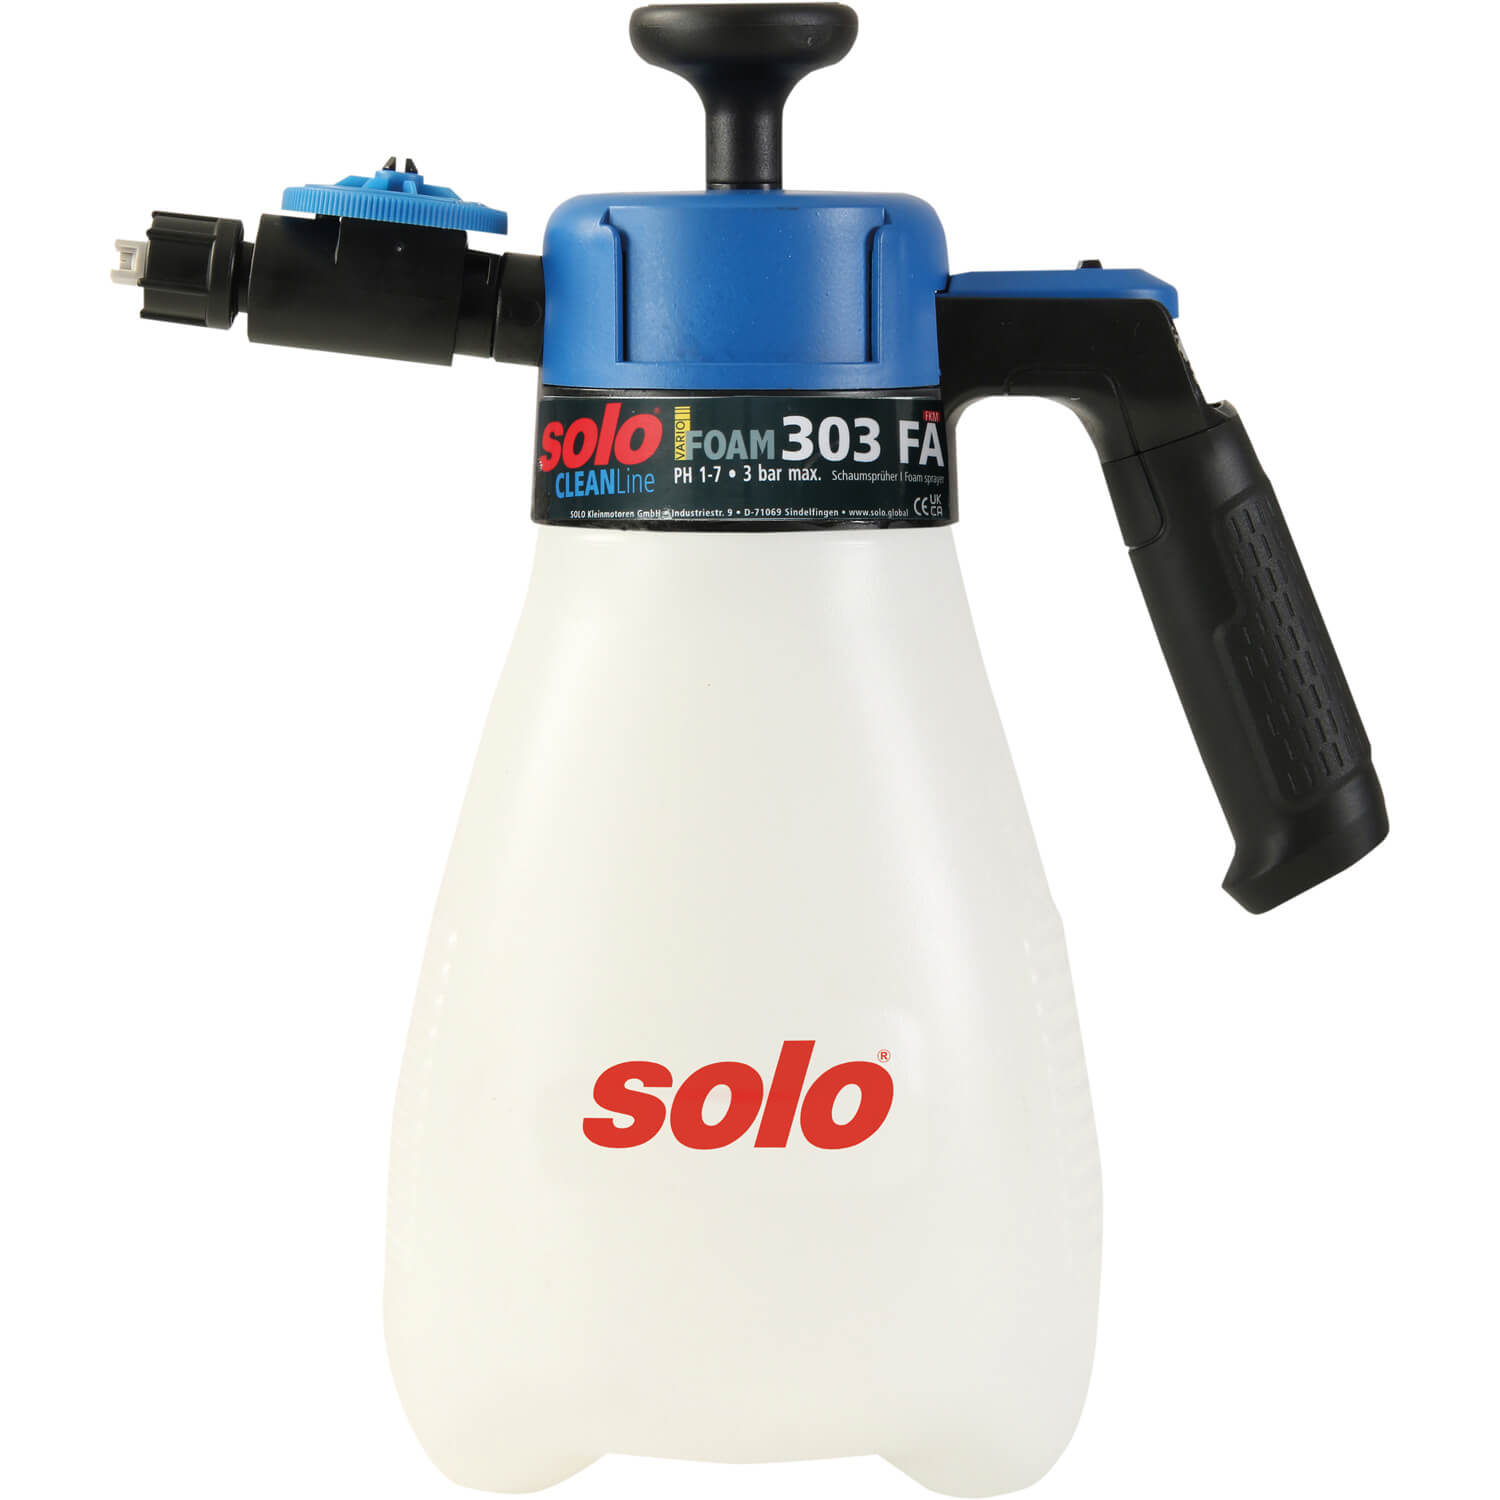 Обприскувач ручний SOLO, 1.25 л, поршневий, тиск 3 бар, вага 0.45 кг | solo 303FA